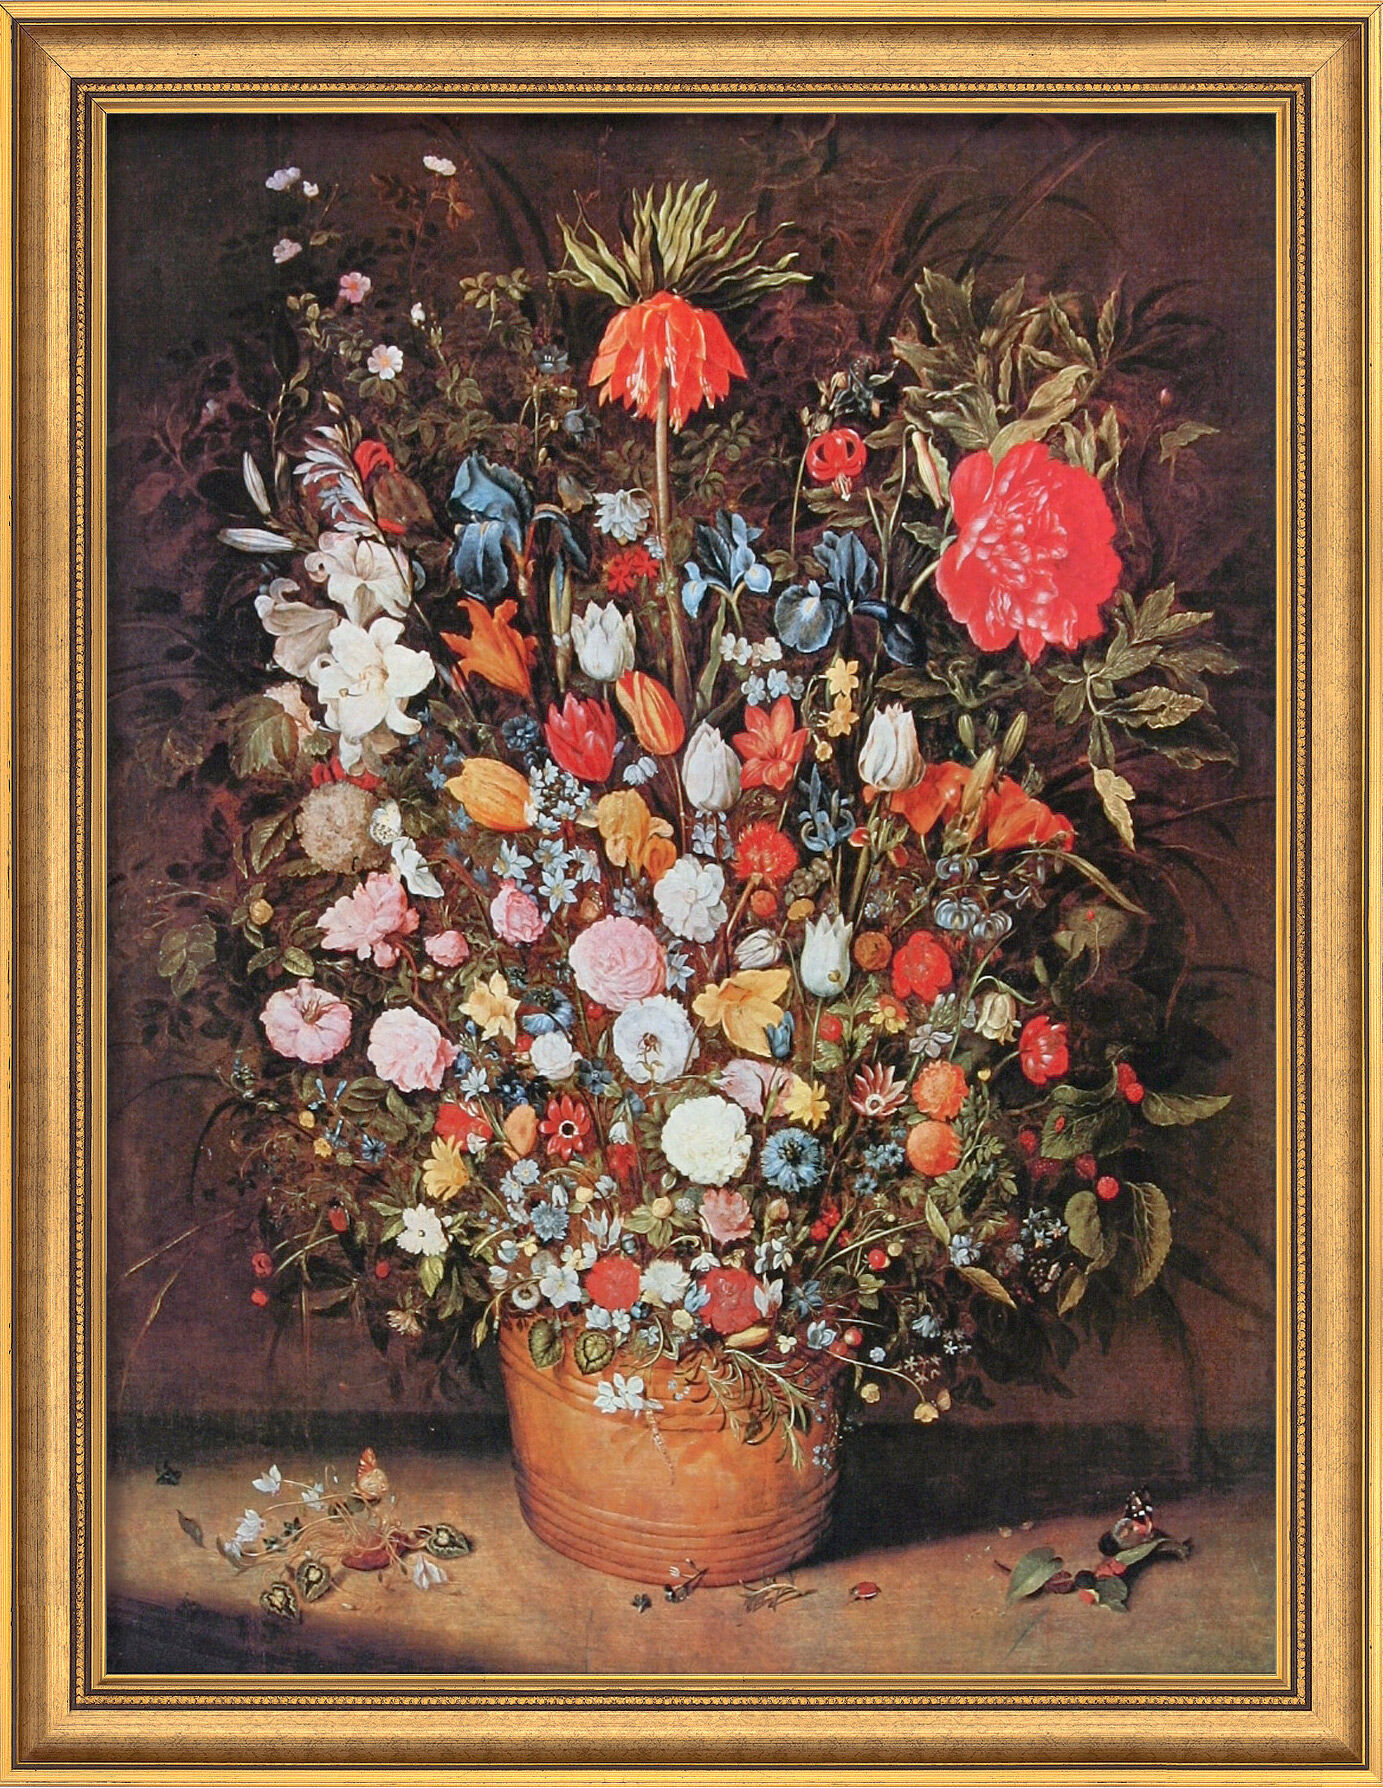 Billede "Buket af blomster" (ca. 1607), indrammet von Jan Brueghel d. Ä.